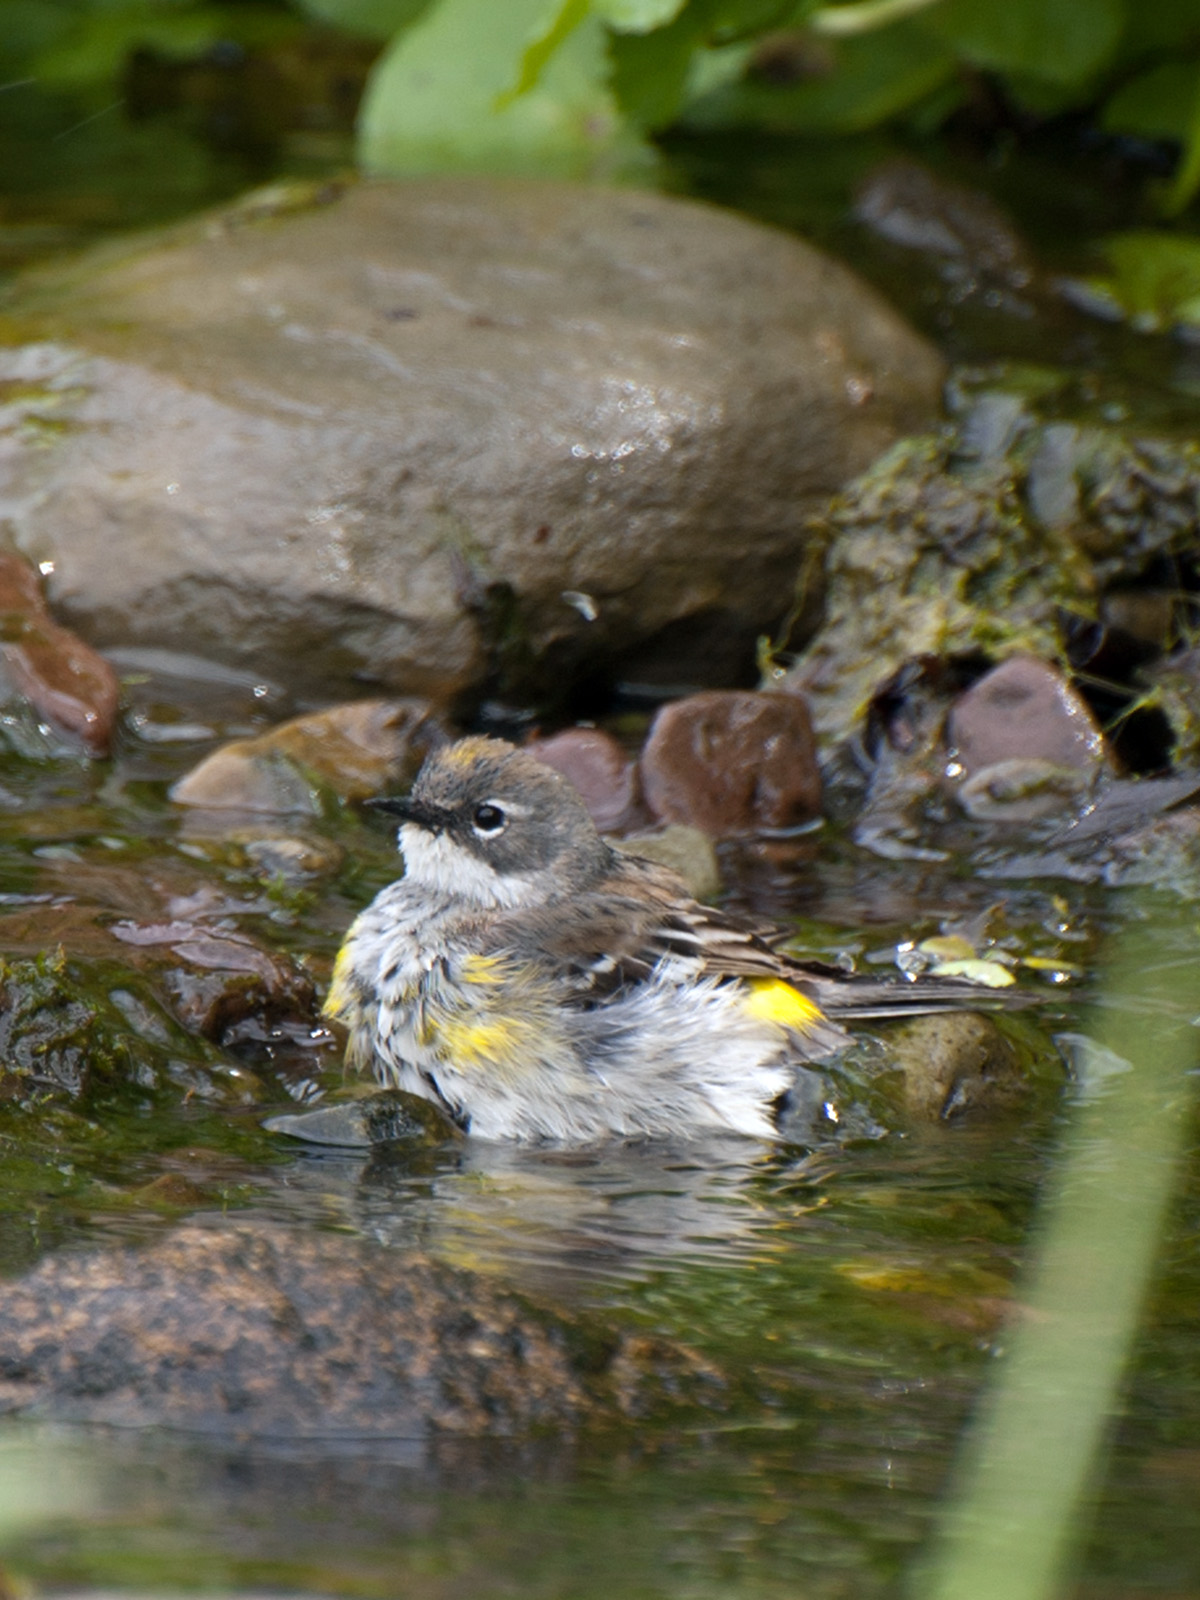 Yellow-rump warbler bathing